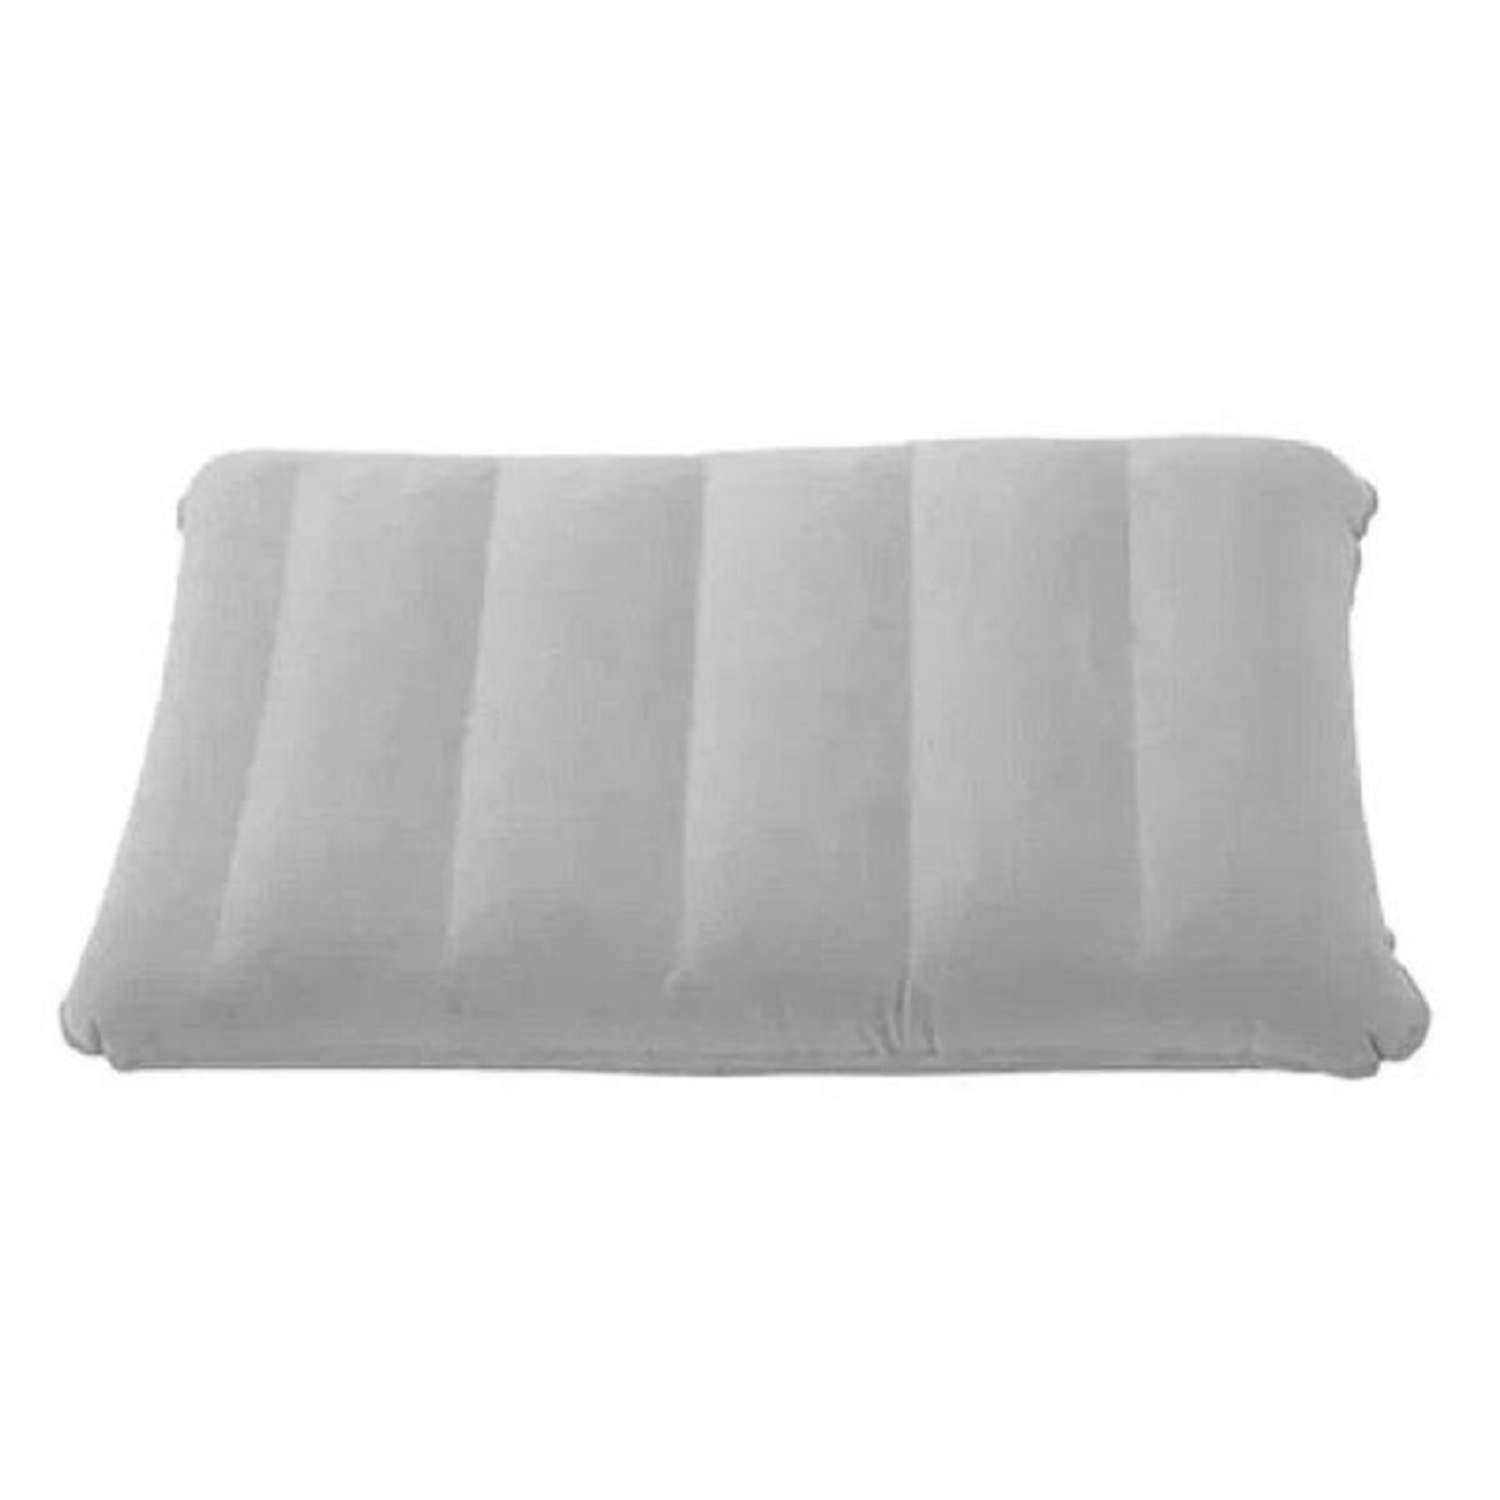 Подушка надувная ZDK Homium Travel Comfort дорожная цвет серый - фото 1